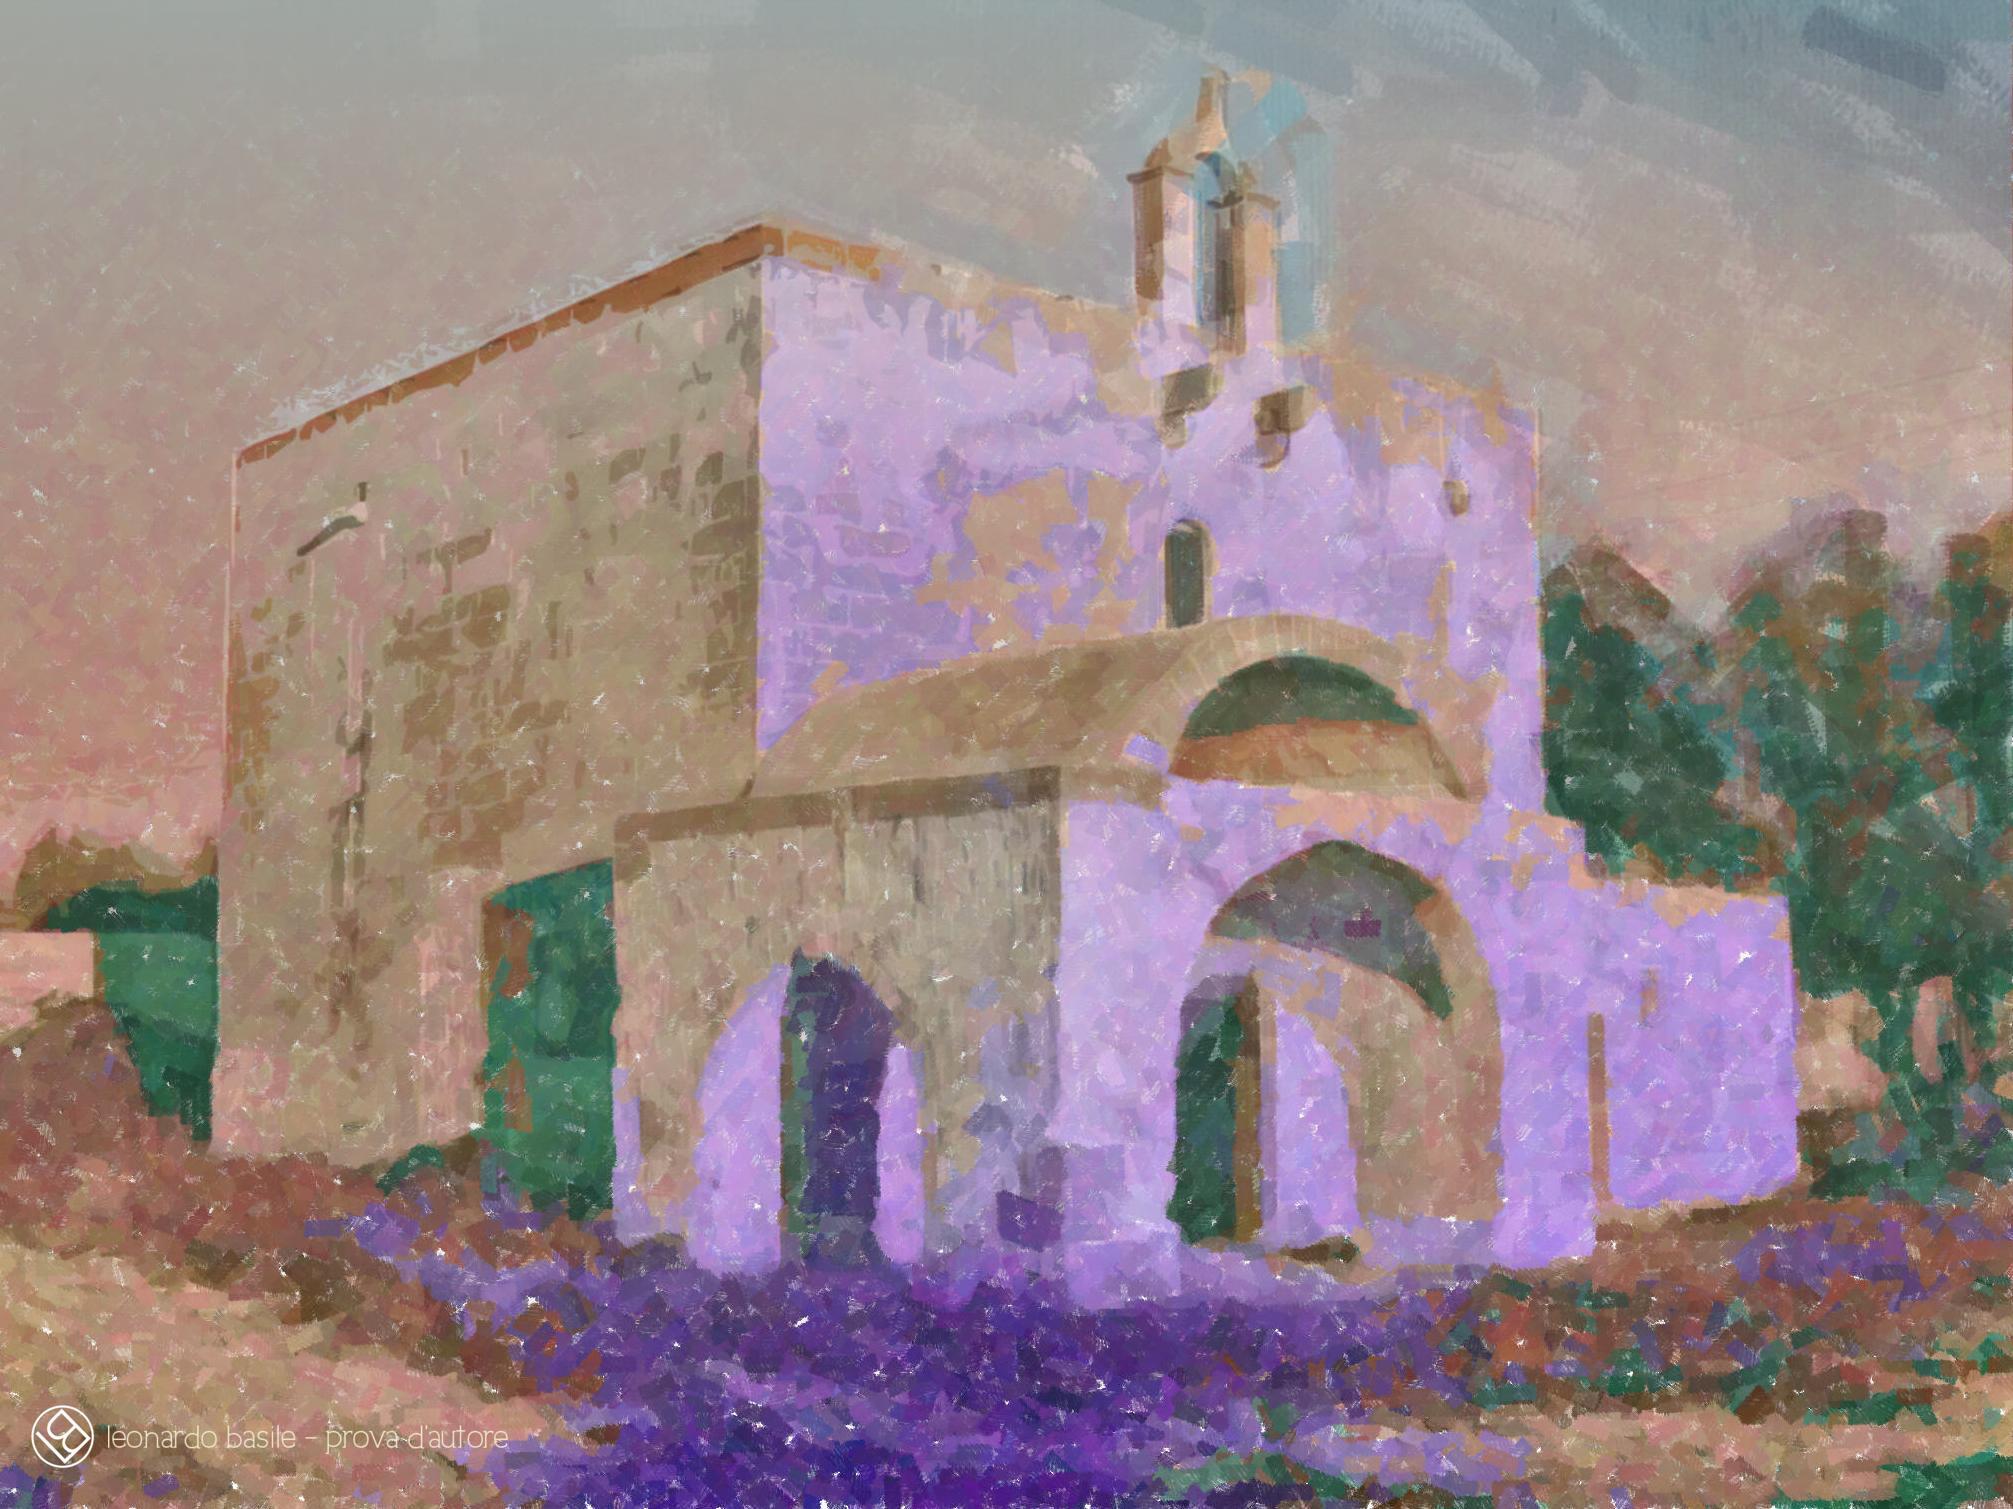 Elaborazione grafica da una fotografia della Chiesa medievale dell'Annunziata di Bari/S.Spirito- 5